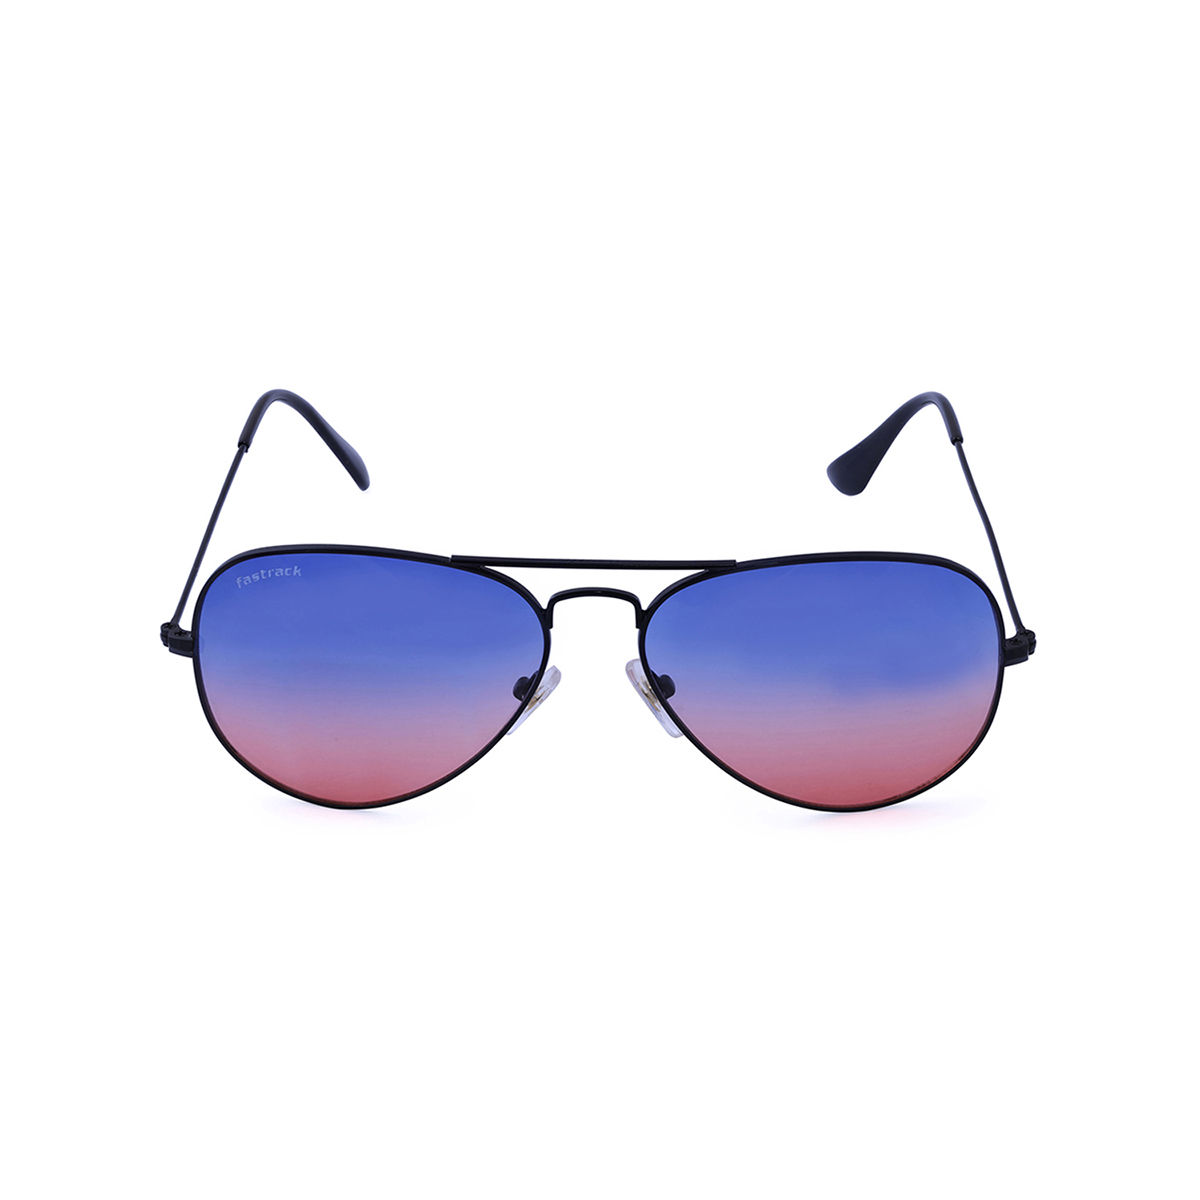 Buy Fastrack Black Aviator Sunglasses (M165BK6V) Online